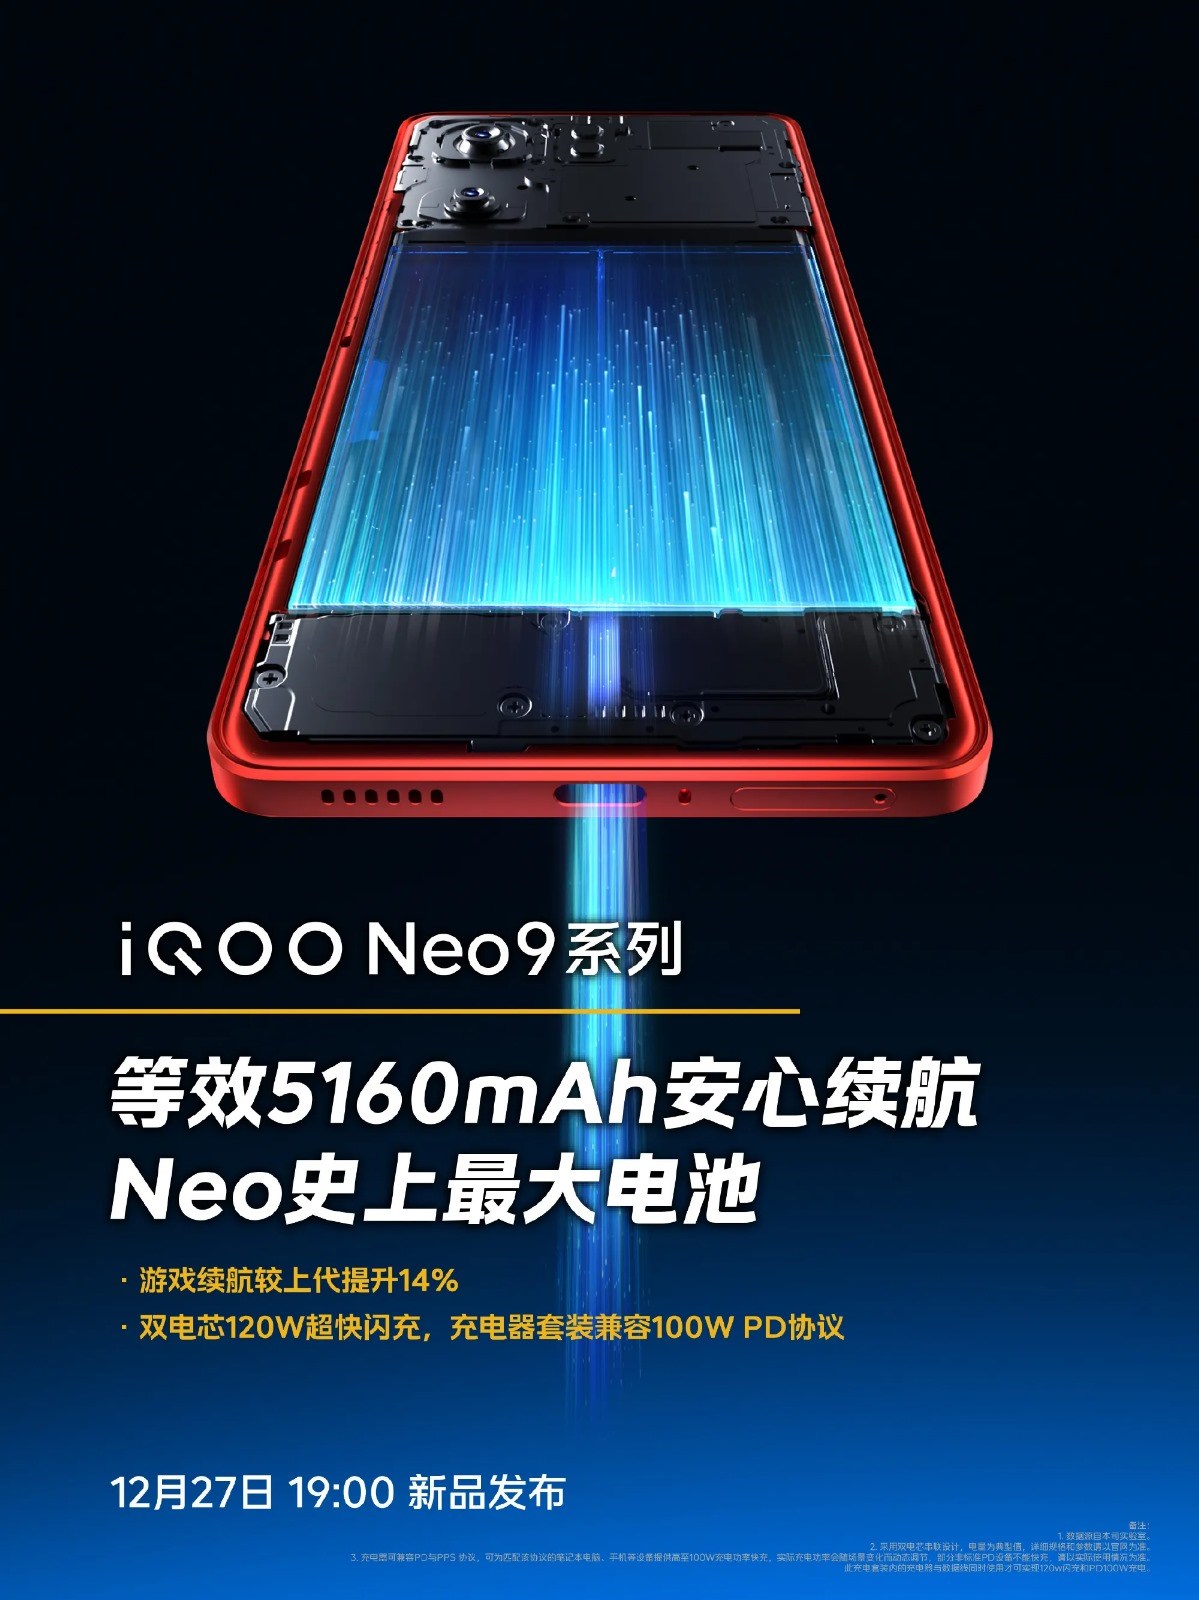 iQOO Neo 9 serisinin batarya özellikleri onaylandı